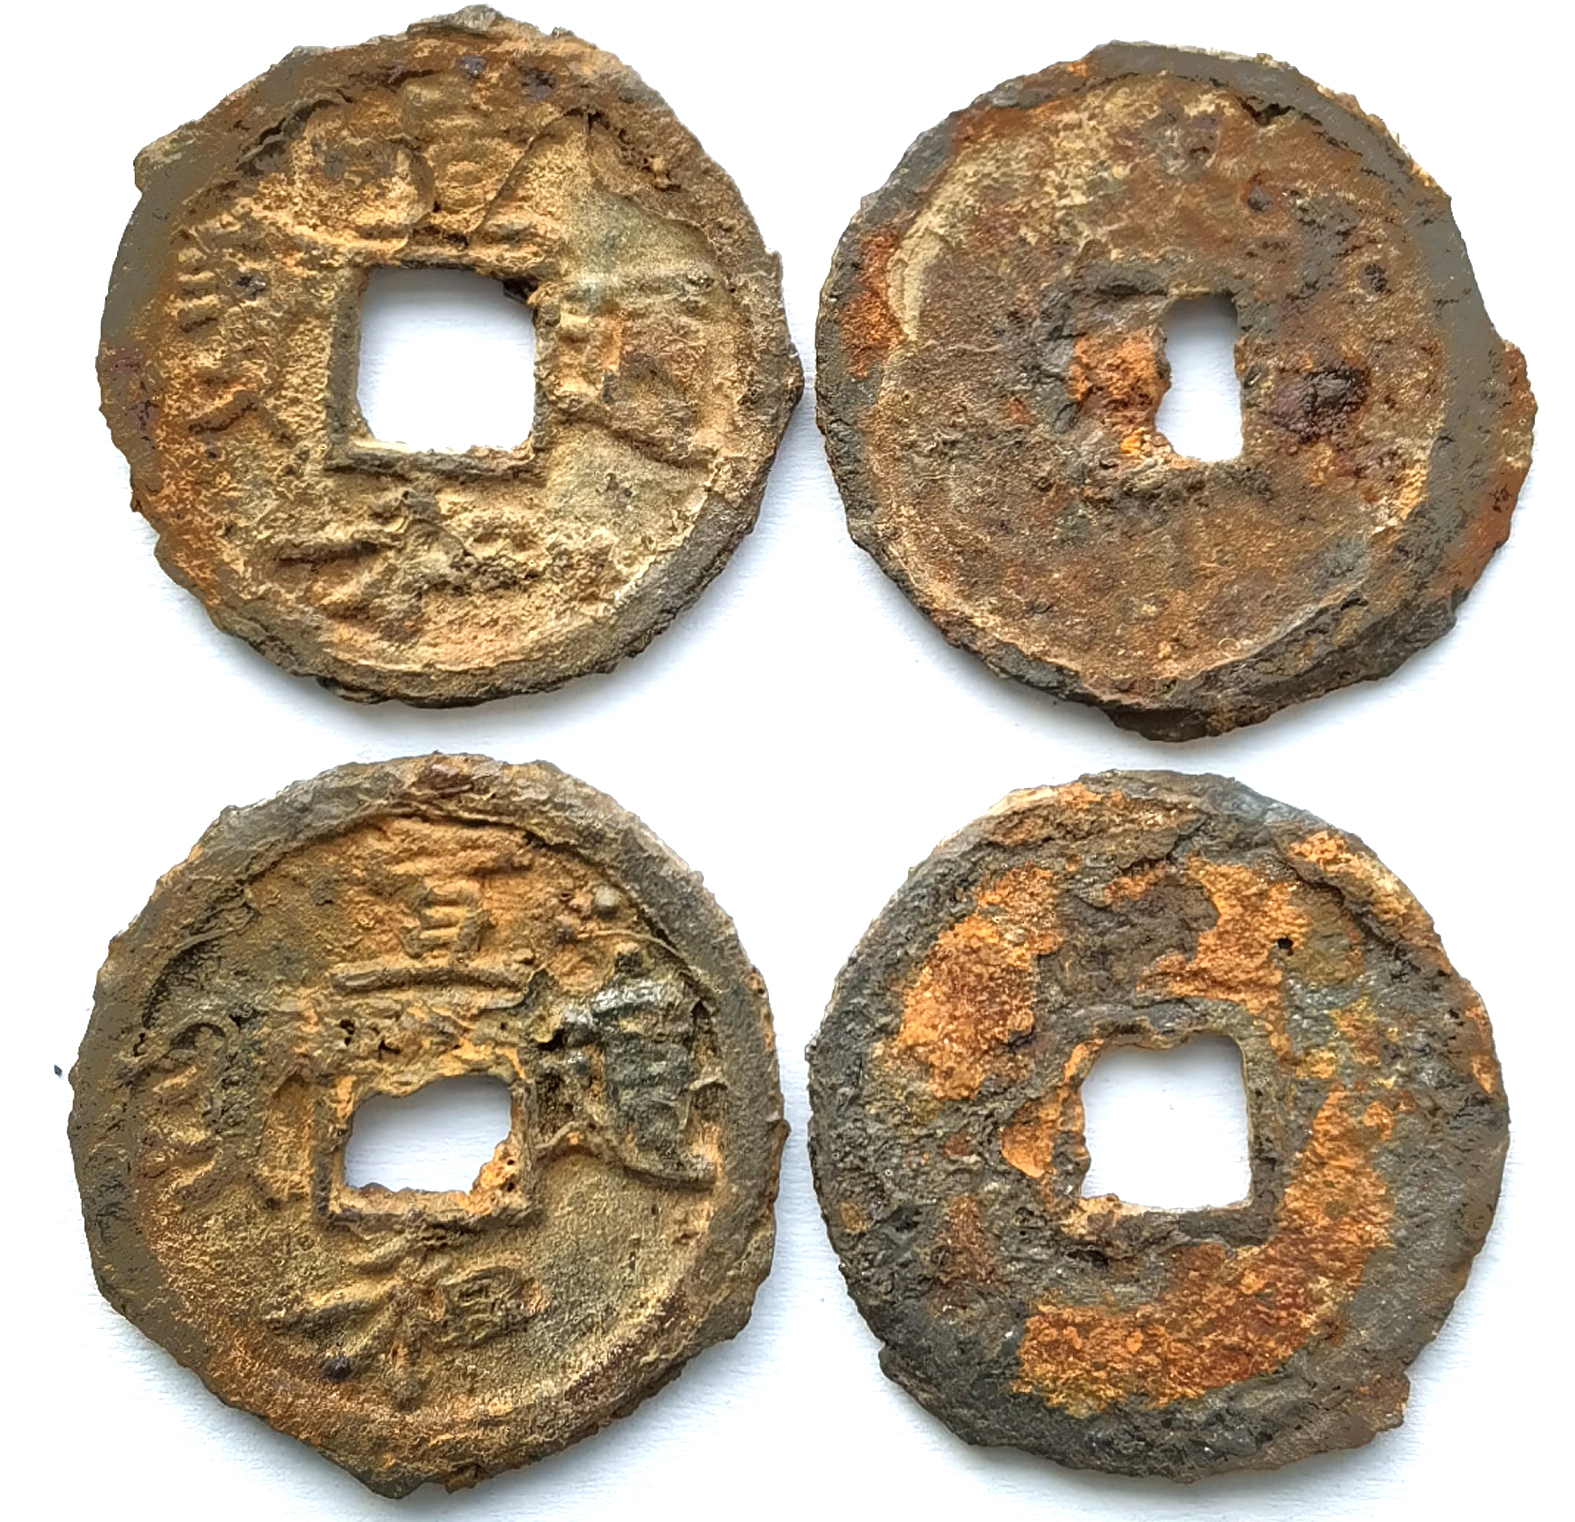 K8840, Xuan He Tong-Bao, 1-Cash Iron Coin, China North Song Dynasty AD 1119